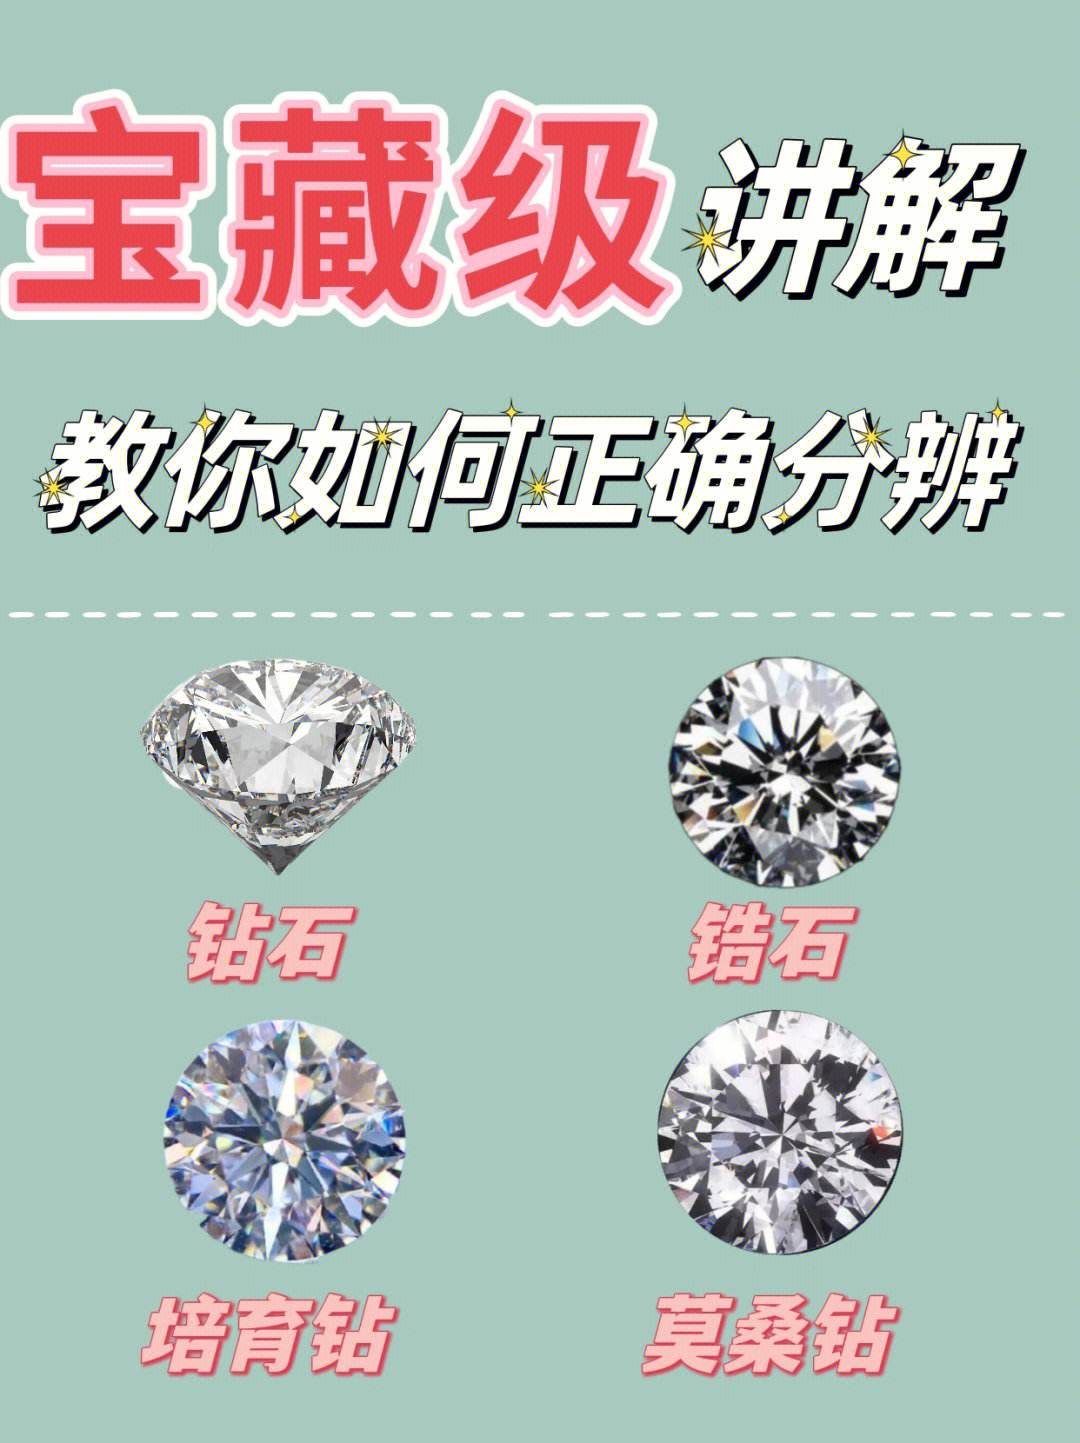 培育钻石和锆石的分别叫什么,培育钻石和锆石的分别-第1张图片-翡翠网